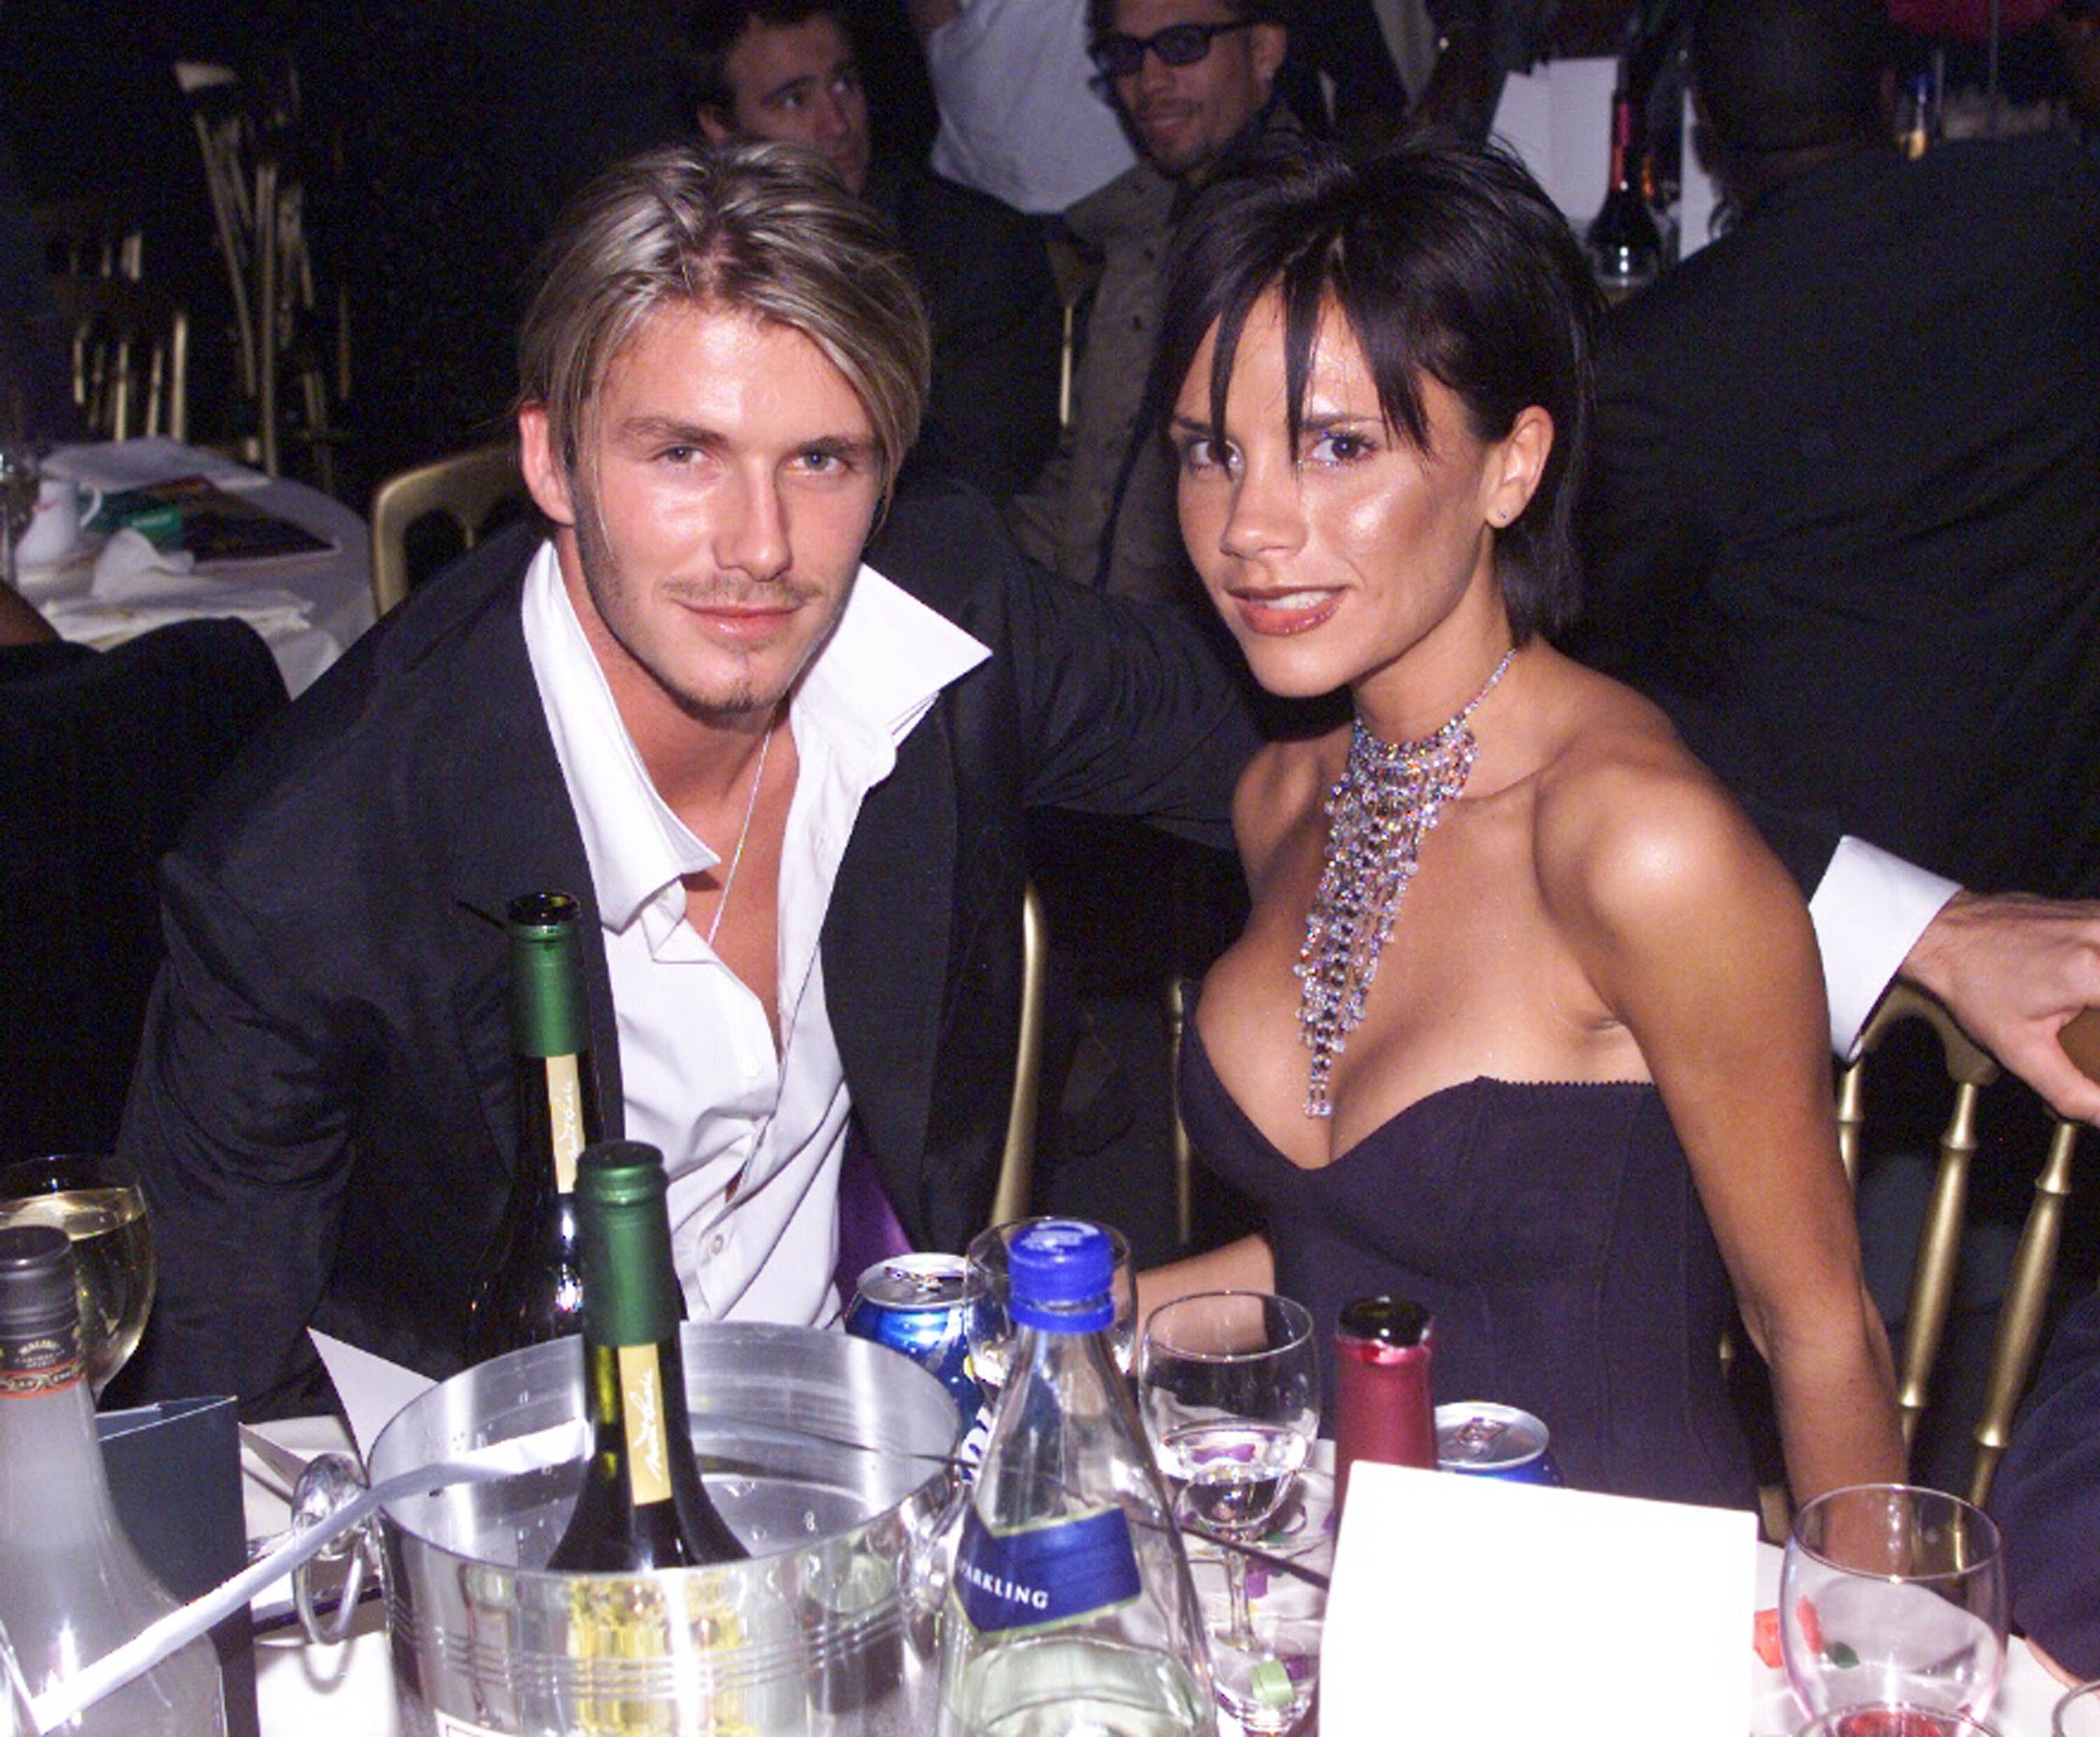 David Beckham raconte sa rencontre avec Victoria : "je me suis dit pourquoi pas"